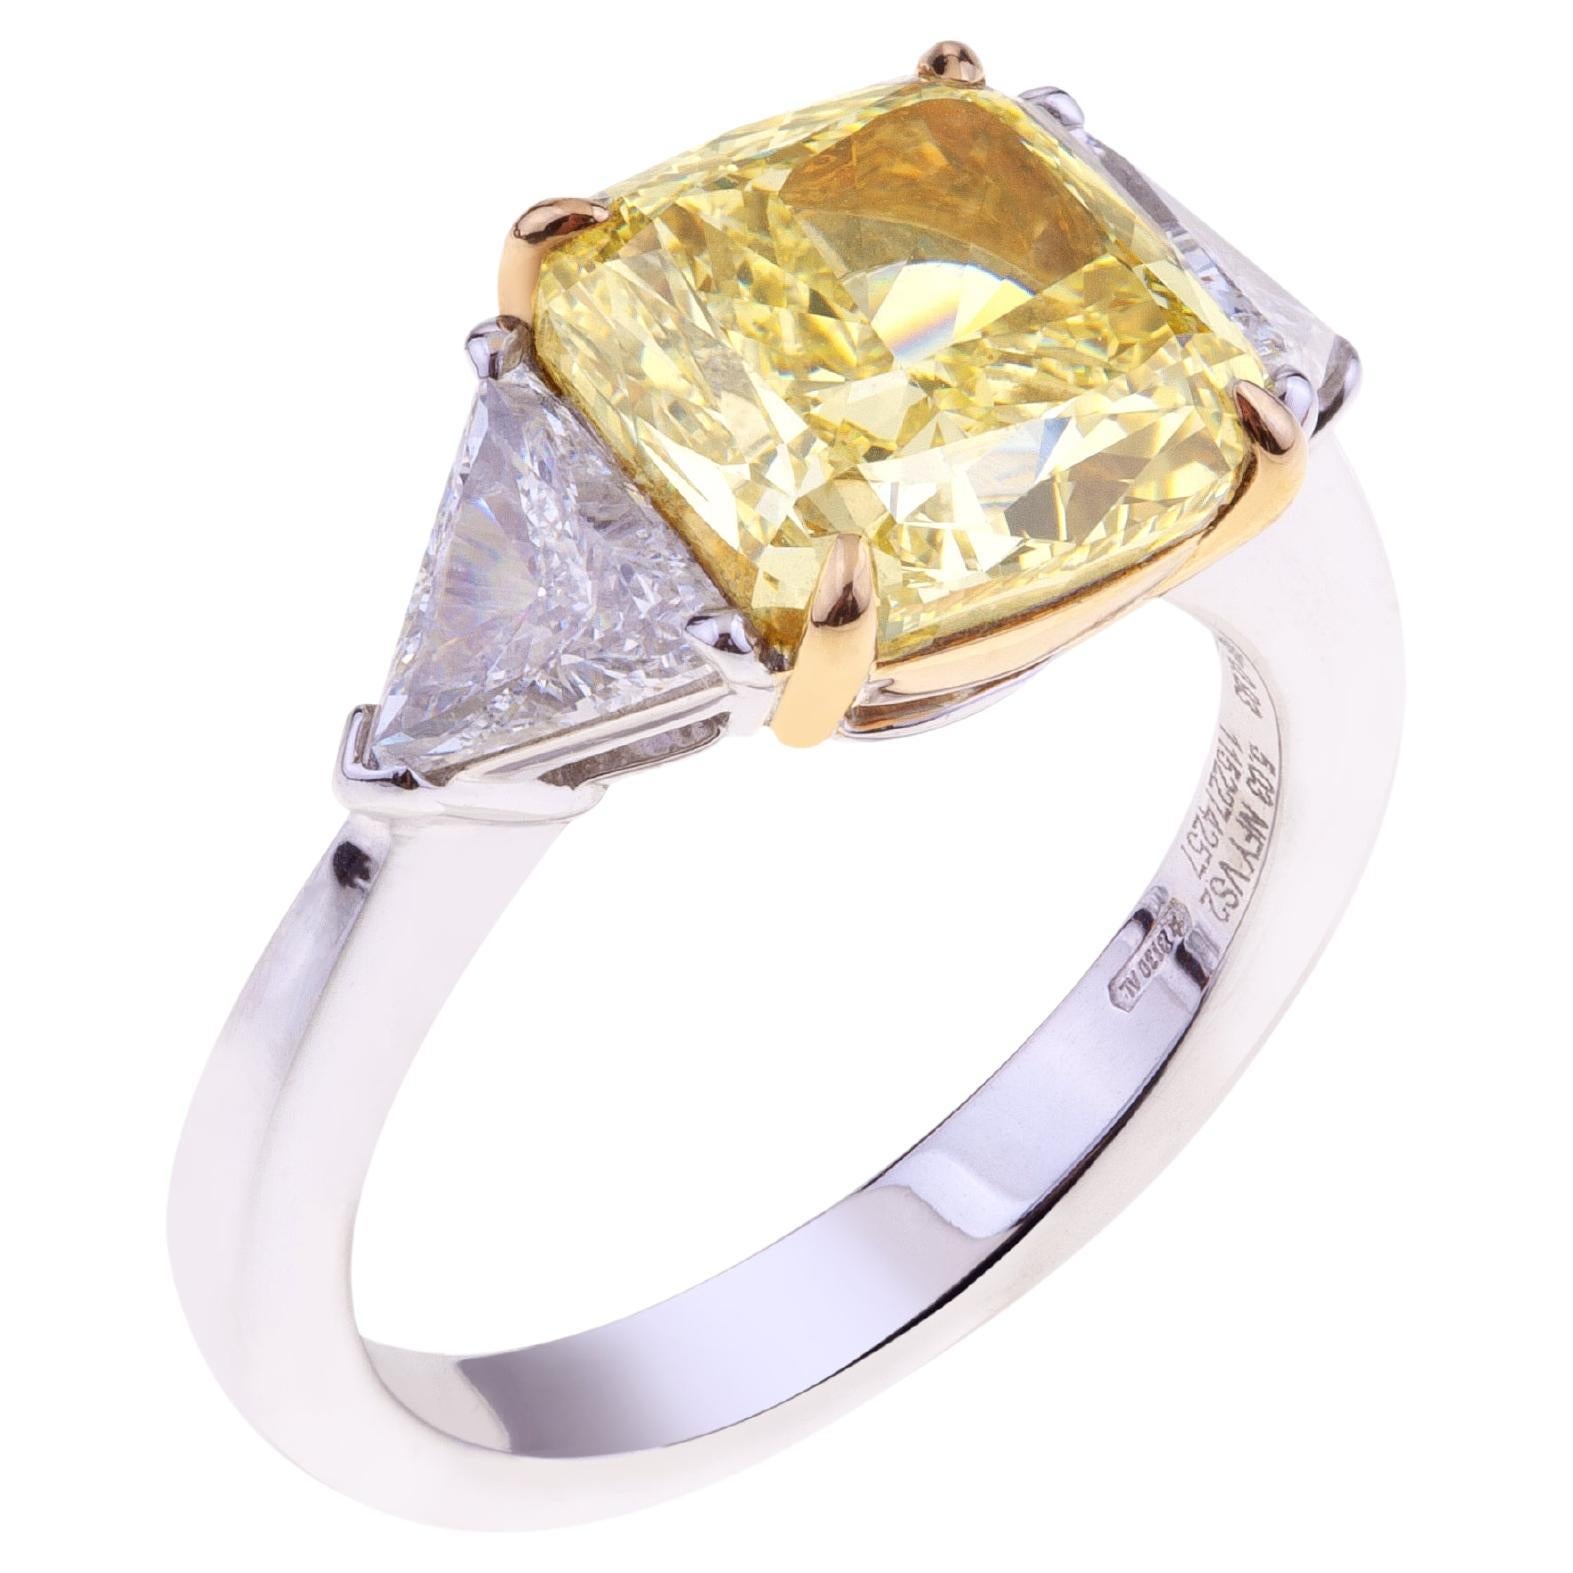 Diamant fantaisie taille coussin ct. 5 certifié GIA avec deux diamants triangulaires latéraux